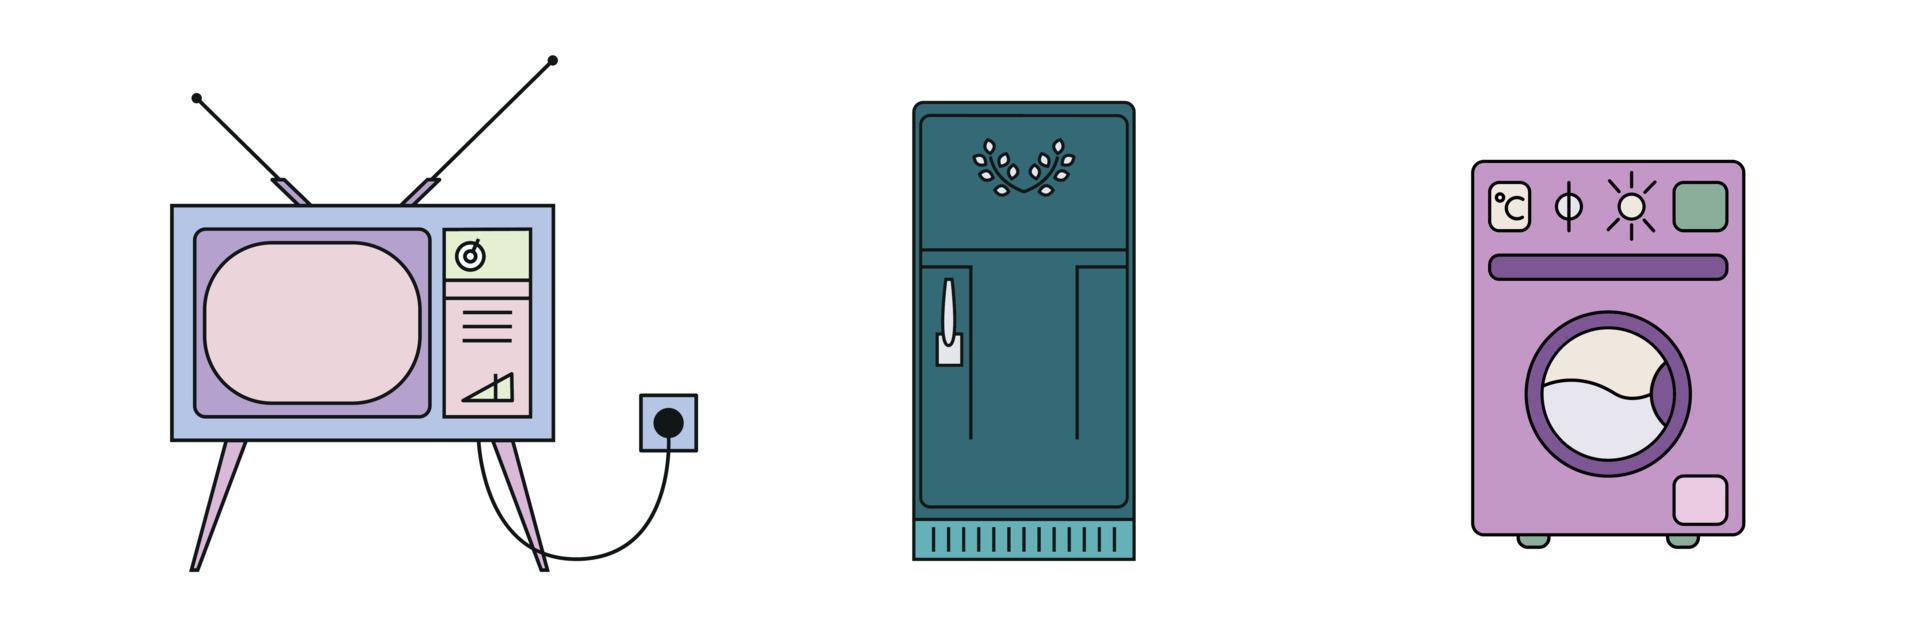 juego de tv frigorifico lavadora. diseño plano de arte lineal. ilustración vectorial sobre fondo blanco, aislado vector